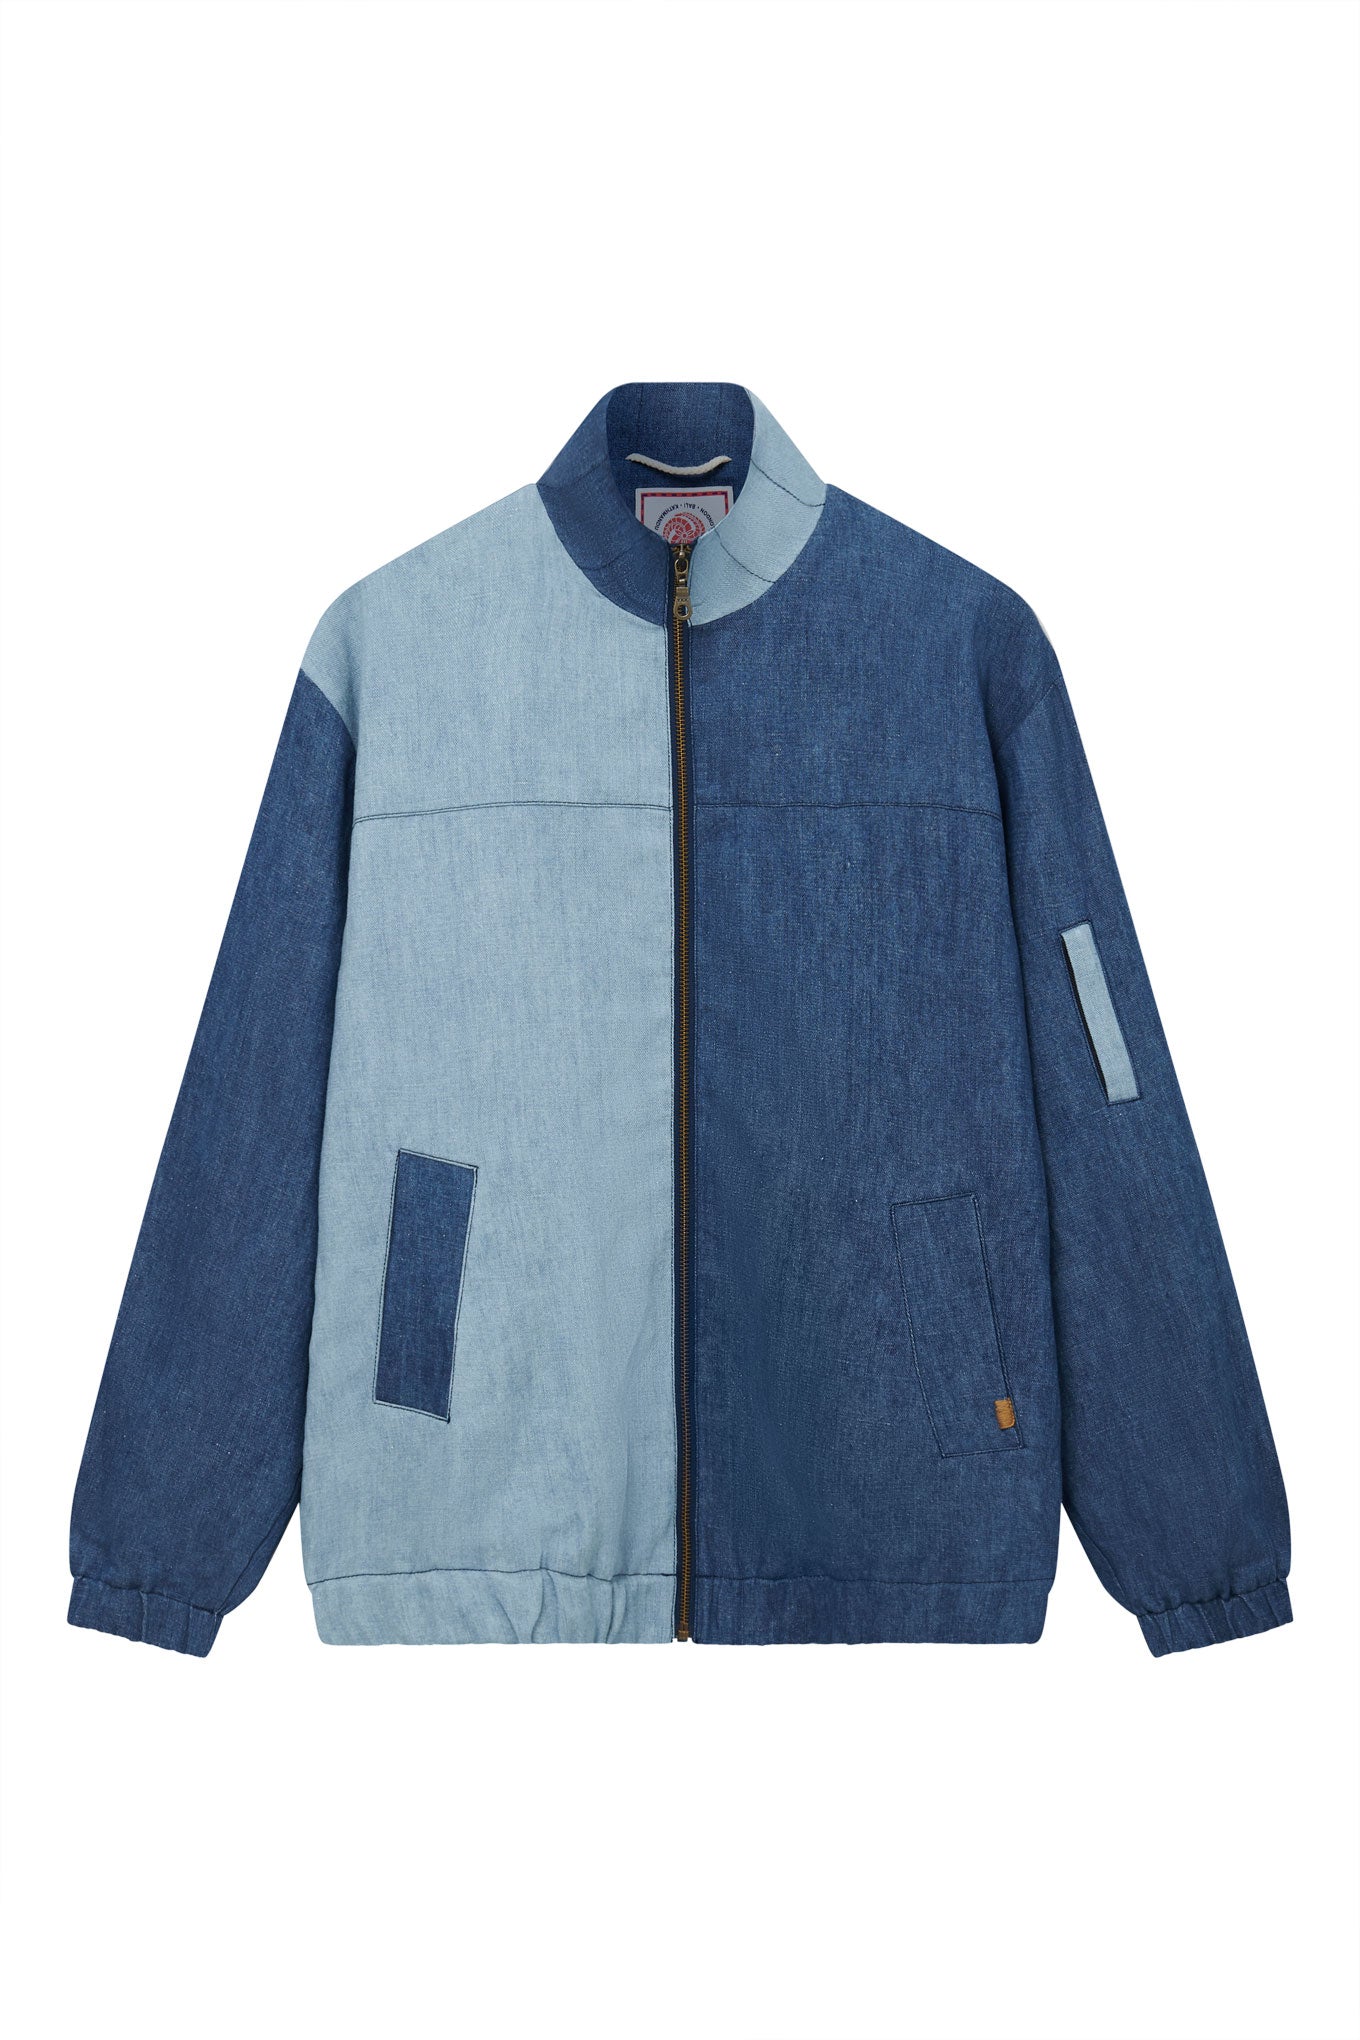 TOBIAS - Linen Jacket Blue Patchwork